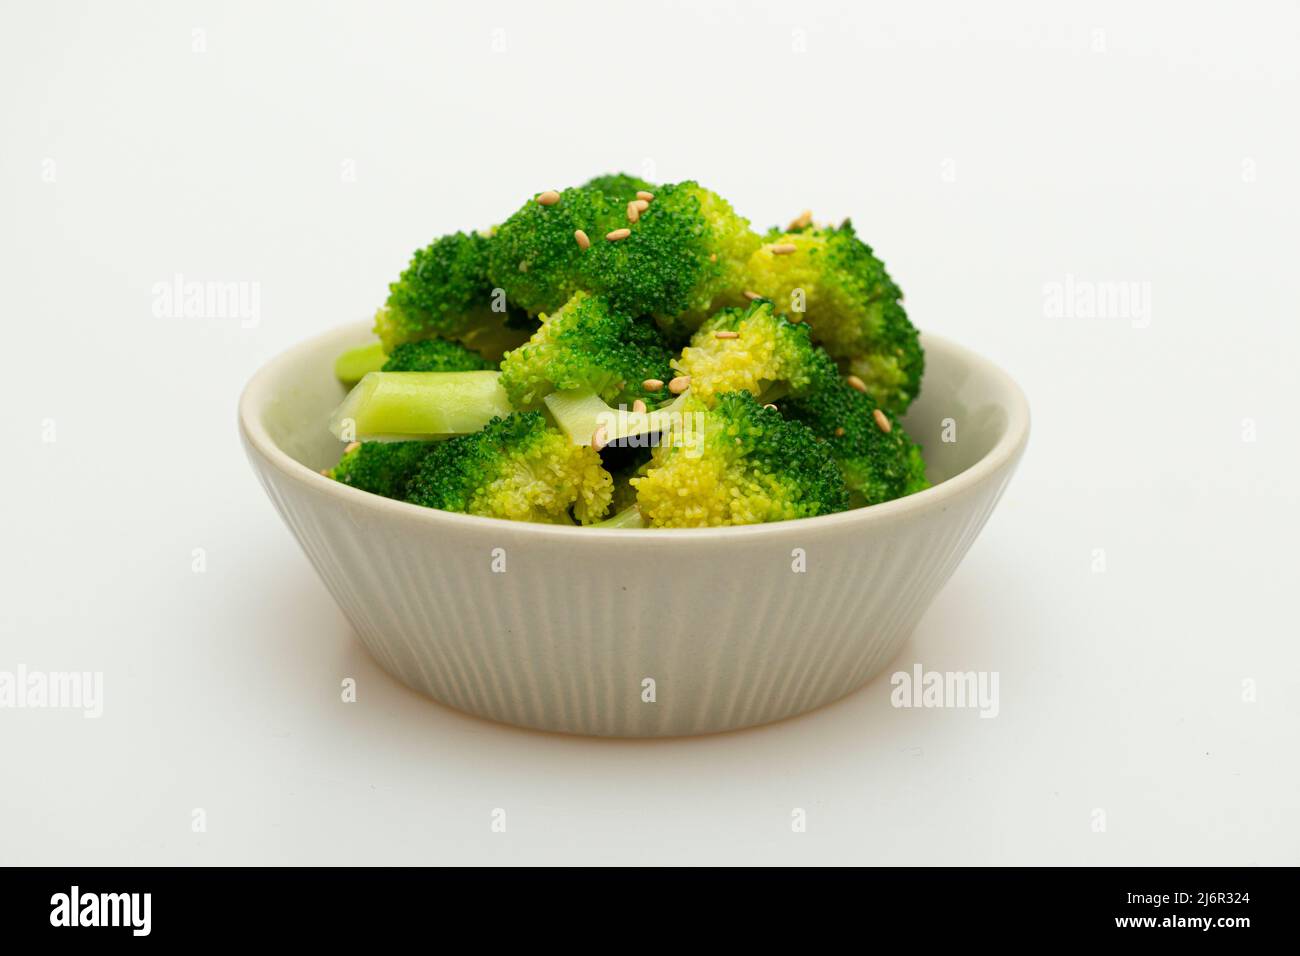 Plat cuit au brocoli soigneusement servi dans un bol Banque D'Images